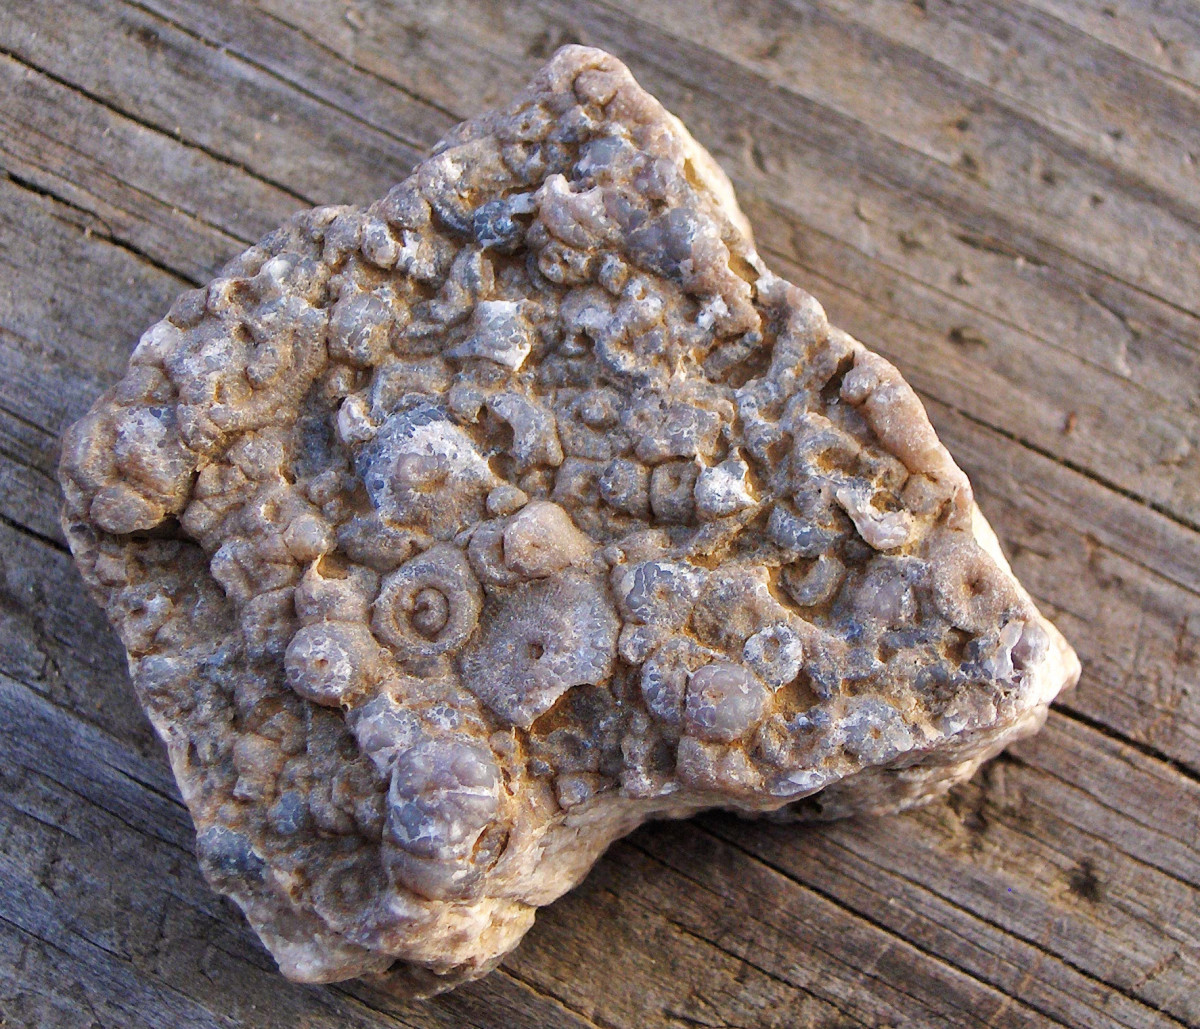 Crinoidal limestone found along Lake Michigan beaches     